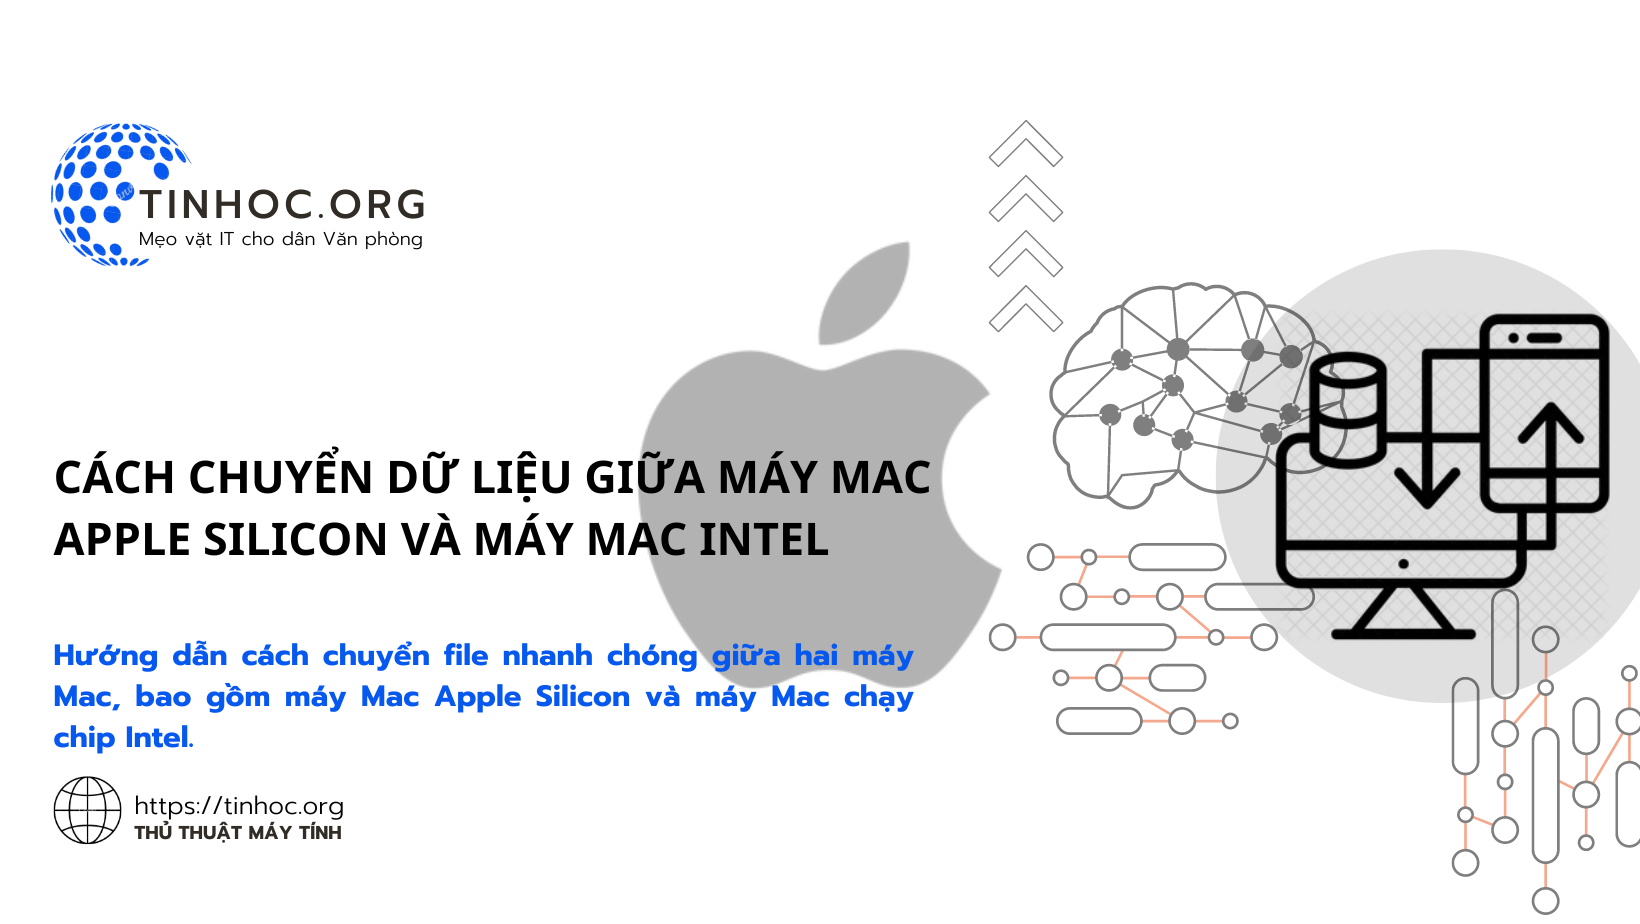 Hướng dẫn cách chuyển file nhanh chóng giữa hai máy Mac, bao gồm máy Mac Apple Silicon và máy Mac chạy chip Intel.